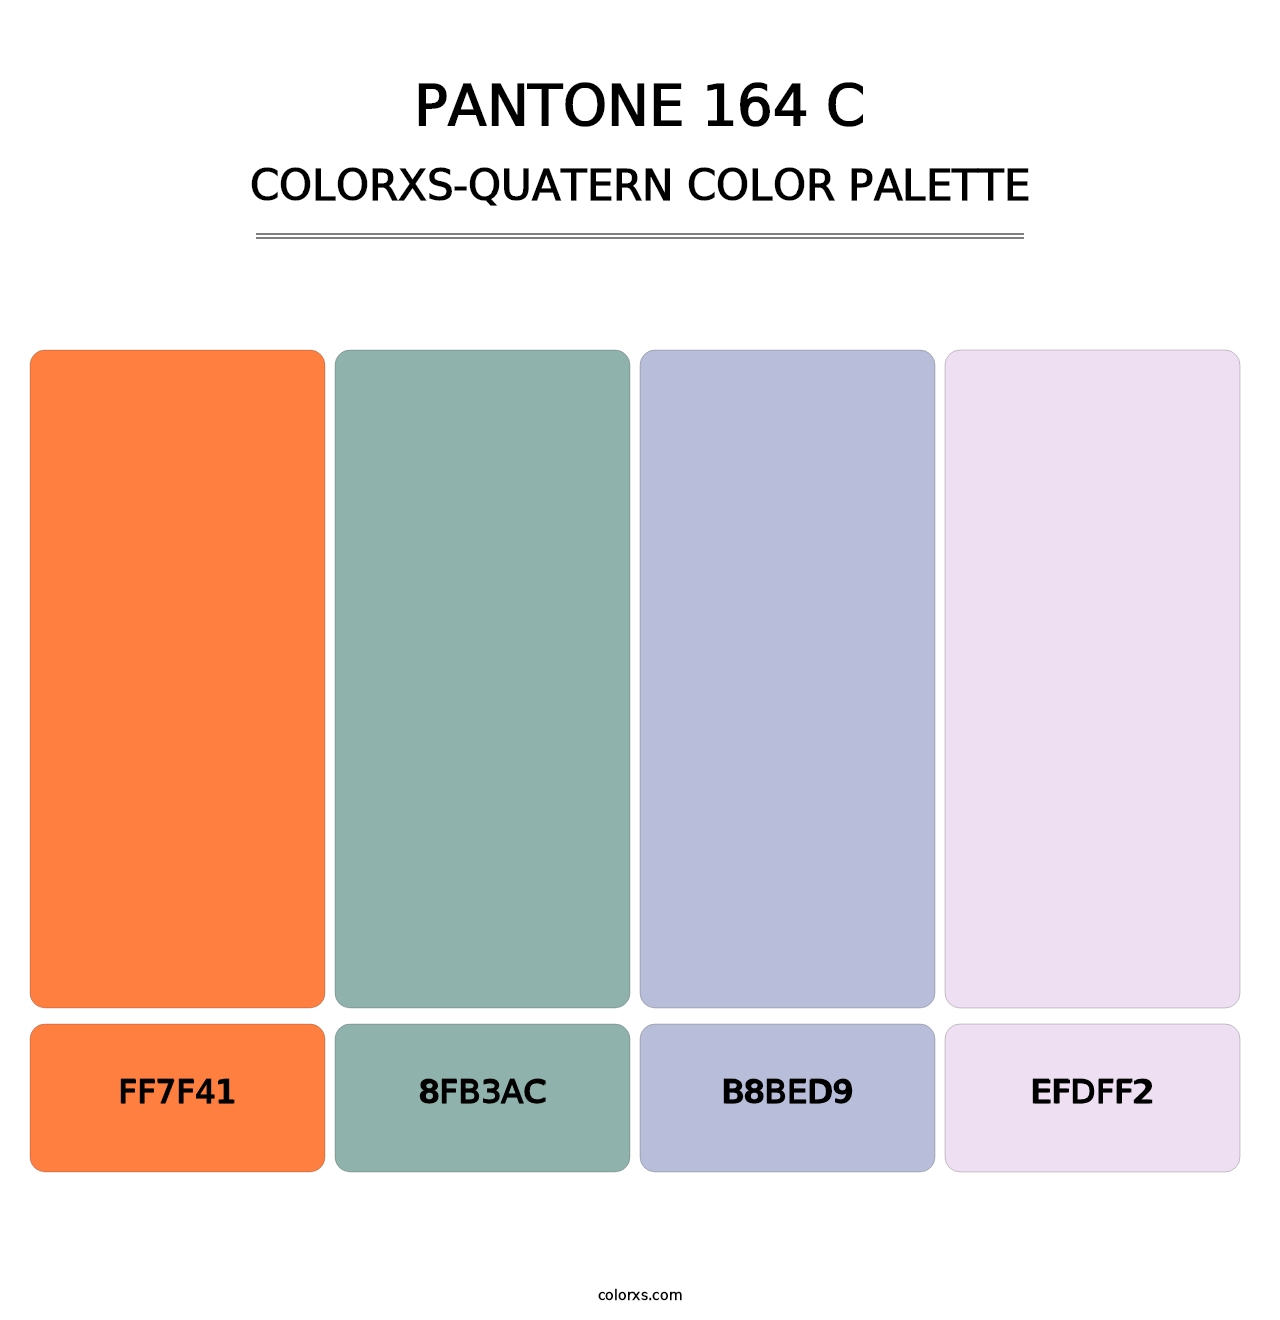 PANTONE 164 C - Colorxs Quatern Palette